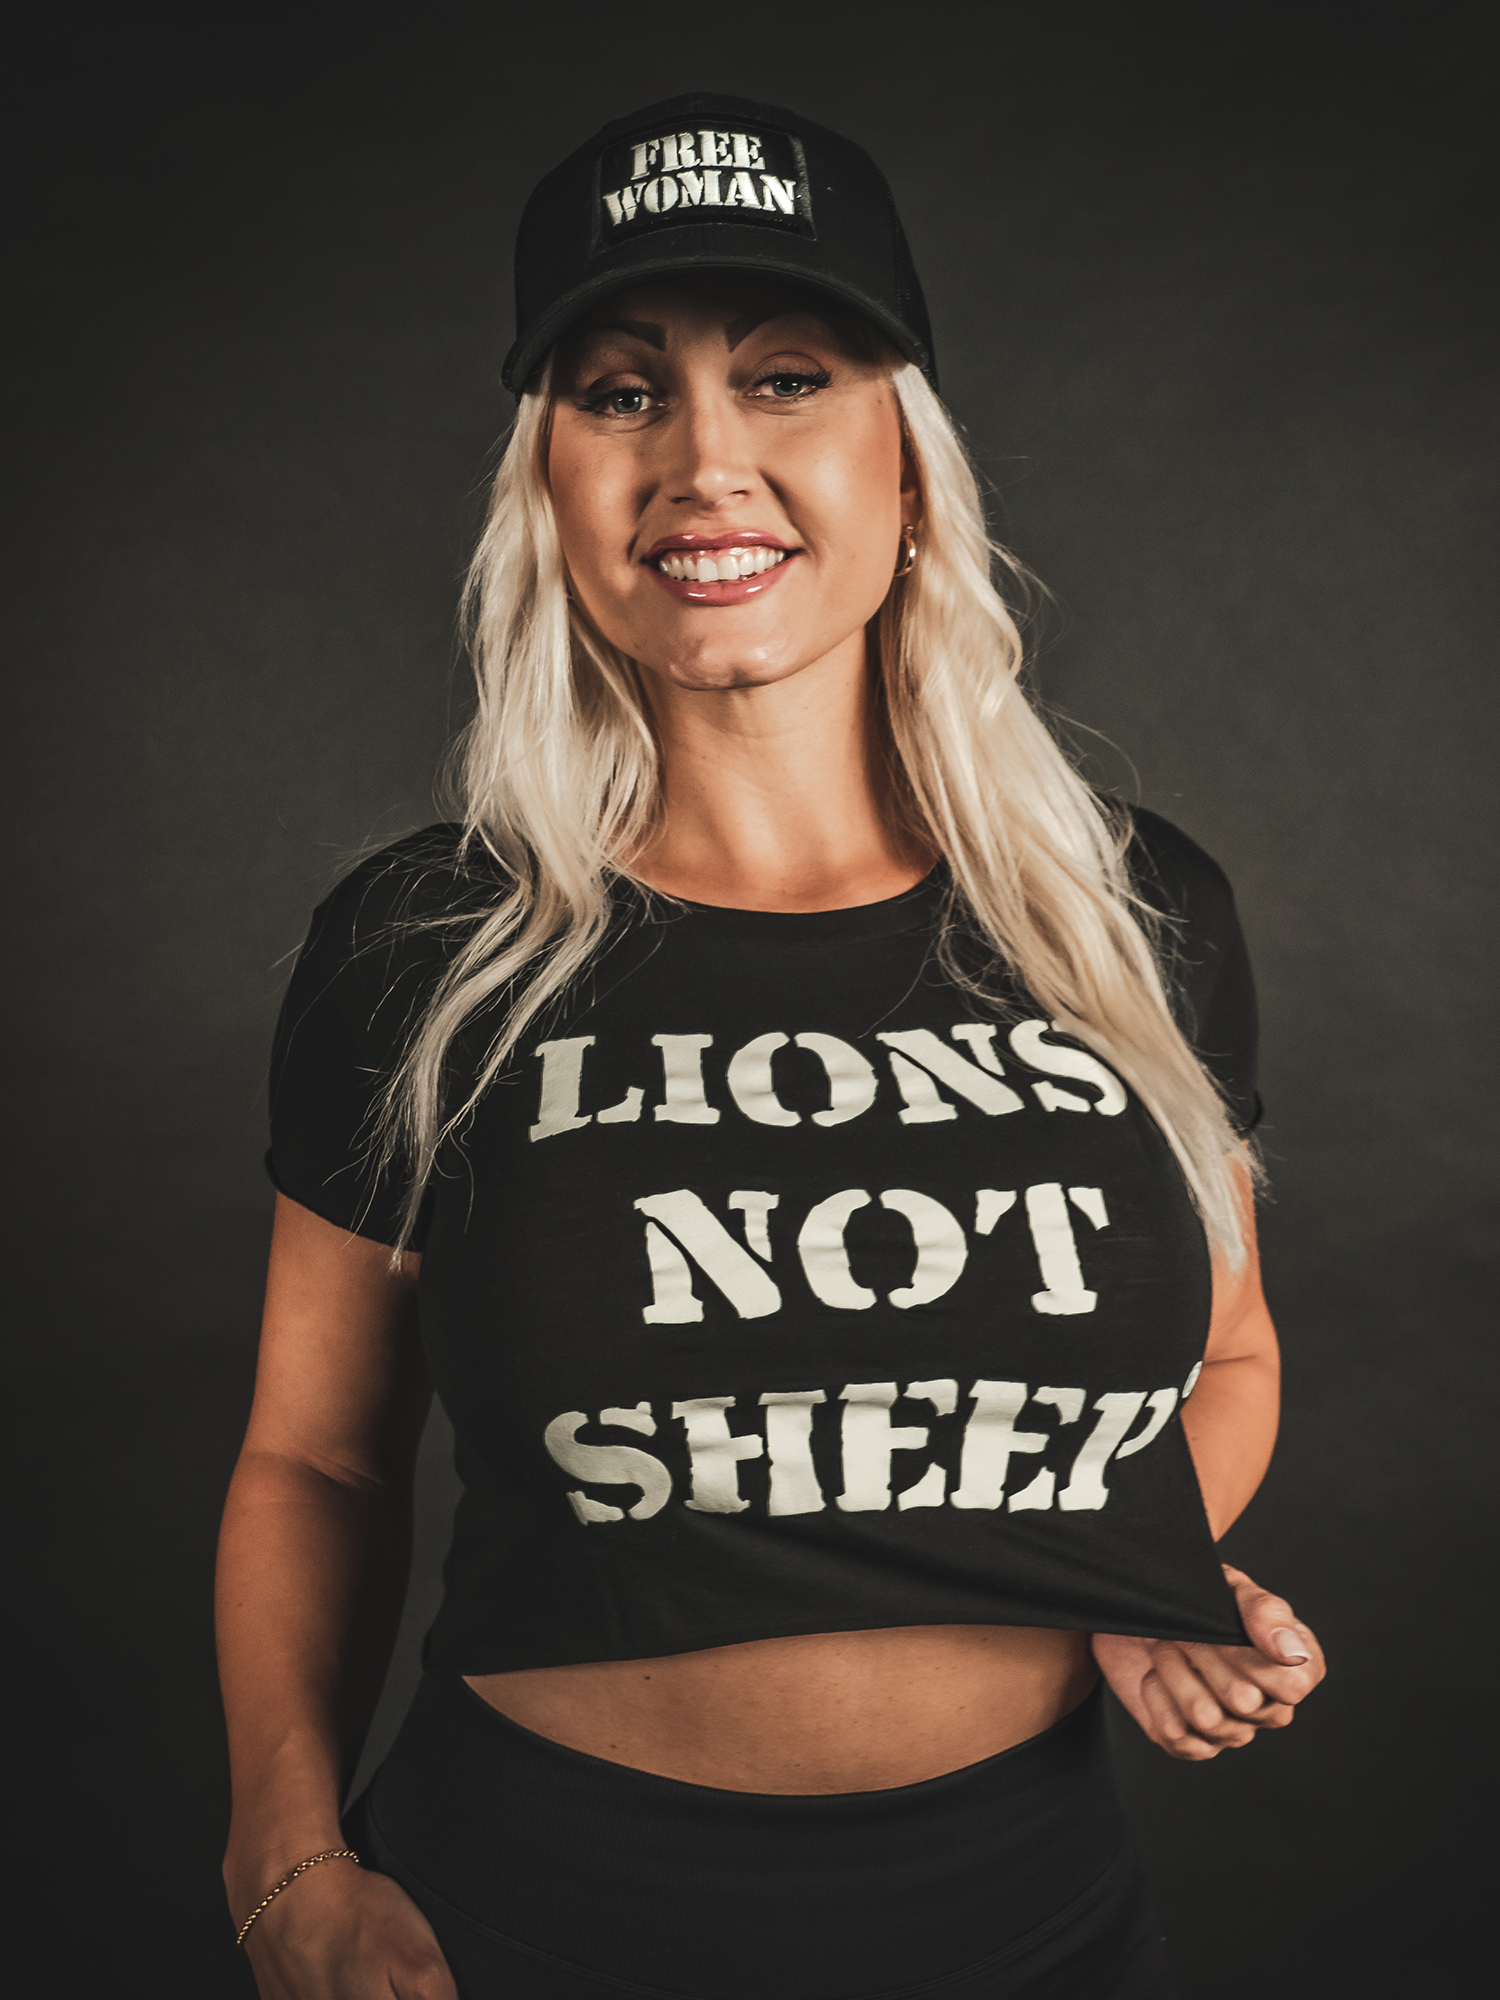 LIONS NOT SHEEP OG Womens Crop Top - Lions Not Sheep ®